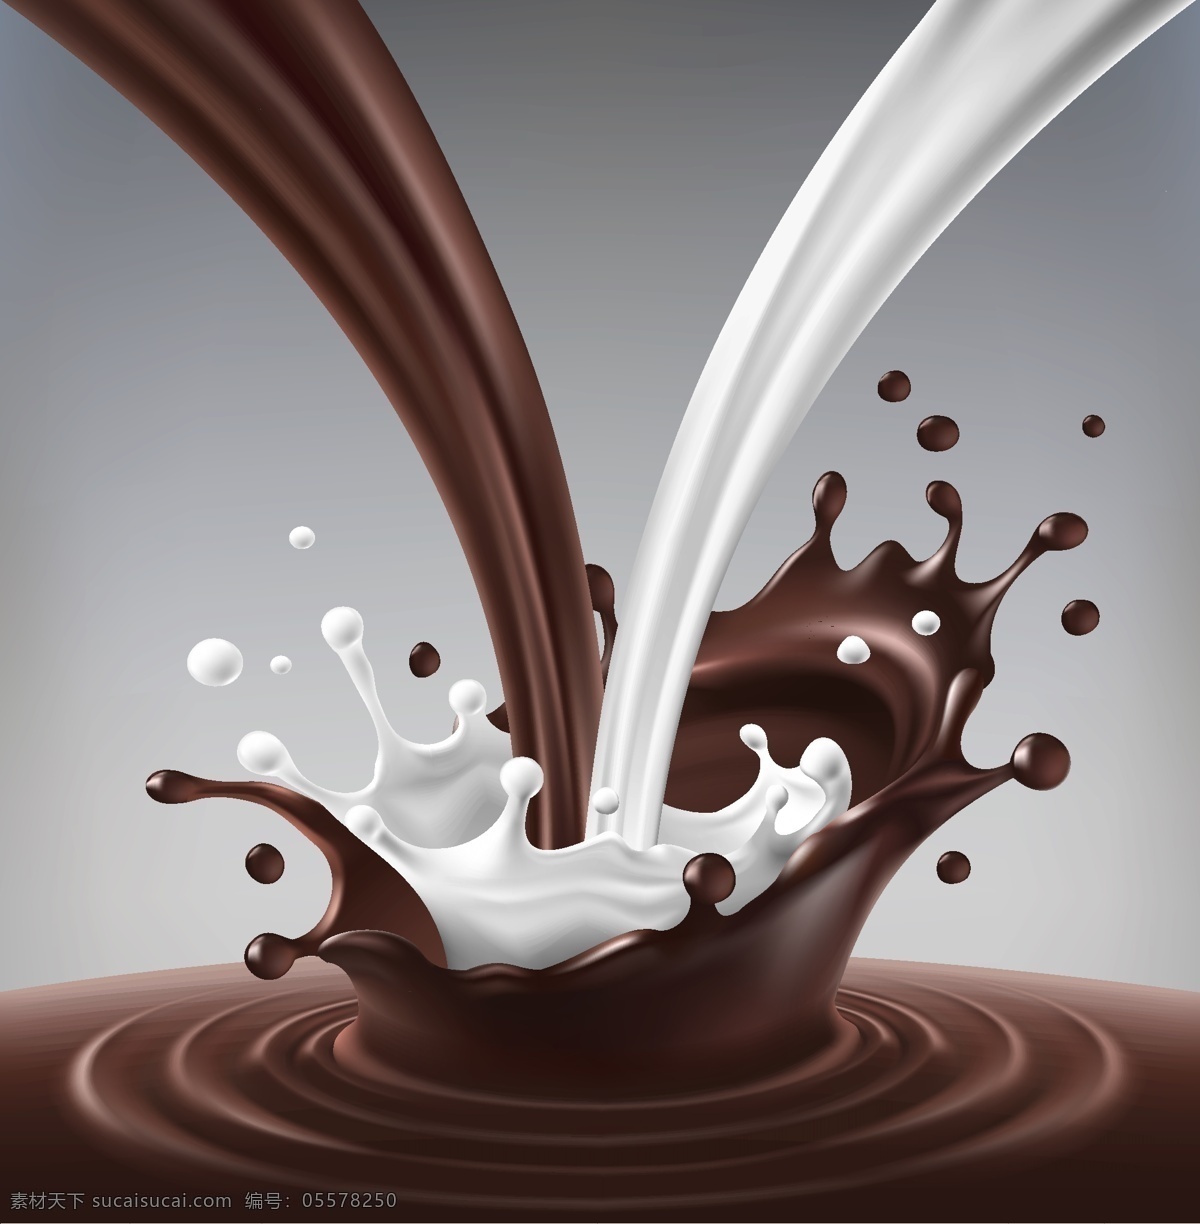 牛奶巧克力 液体巧克力 奶 糖 牛奶 牛奶海报 牛奶广告 牛奶素材 广告 海报 奶制品 酸奶 水纹 水波 水滴 水 液体 浪花